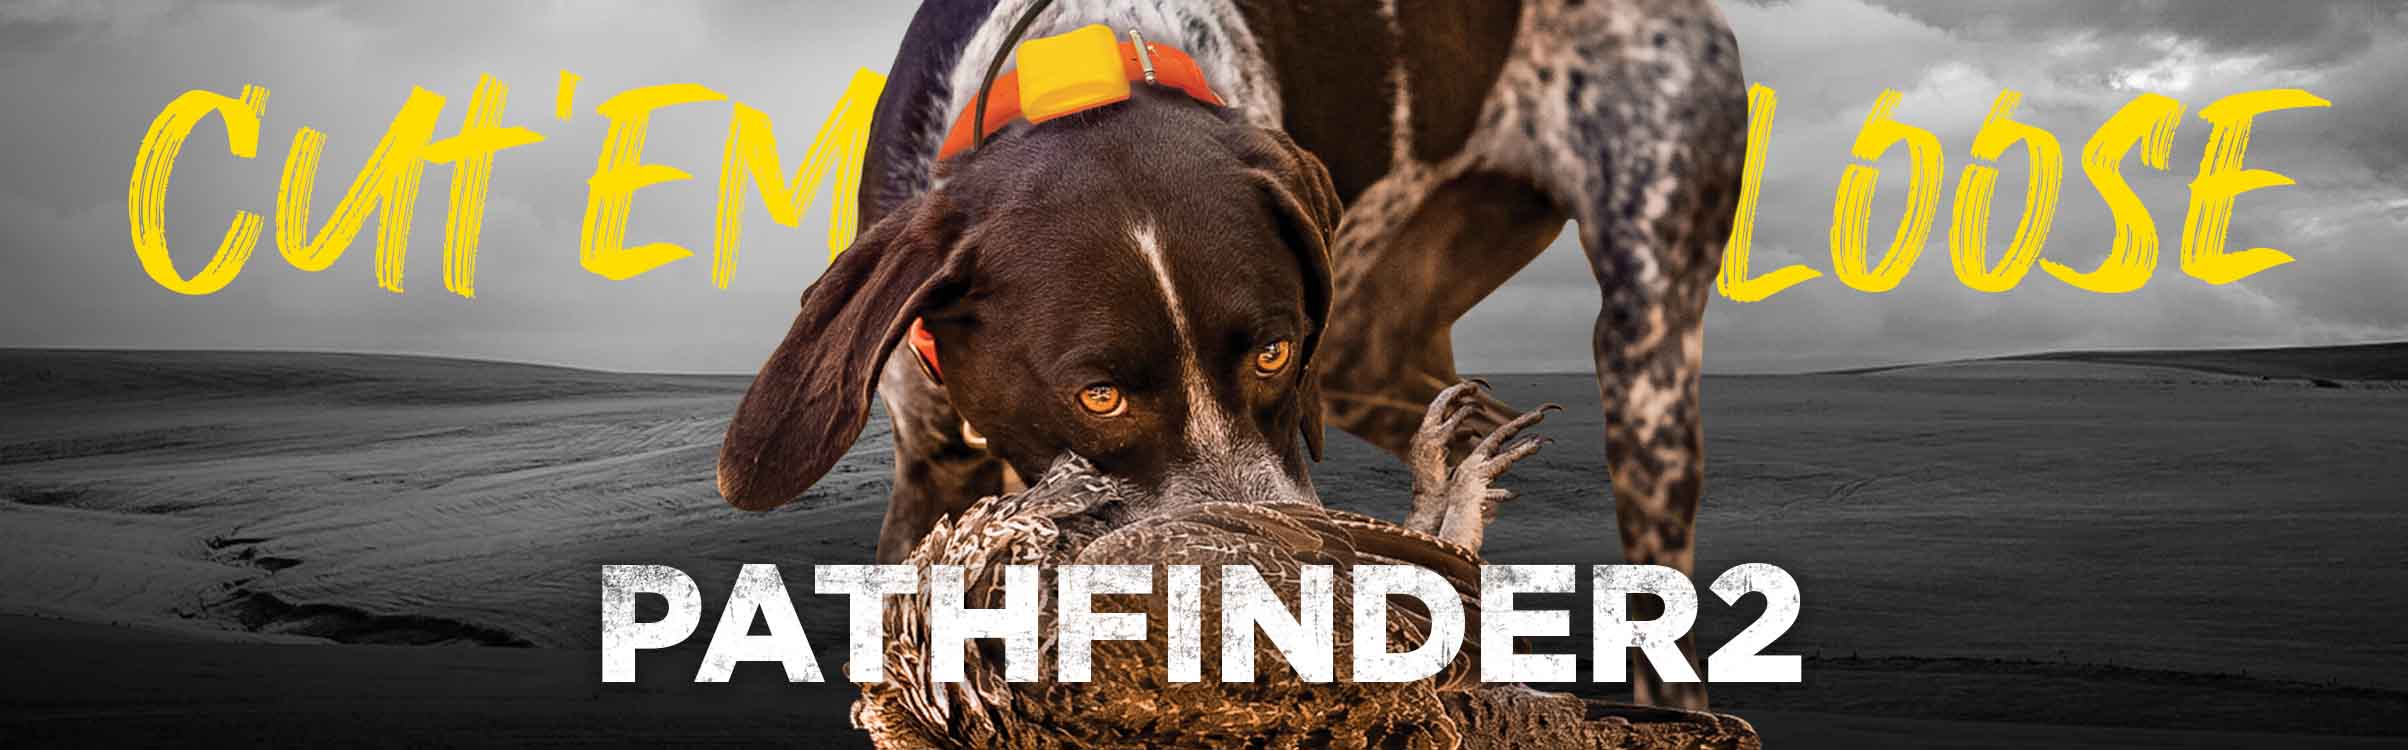 Dogtra Pathfinder 2 - Collar de caza con GPS para entrenamiento de perros  con control remoto, rango de 9 millas, seguimiento y contención para razas